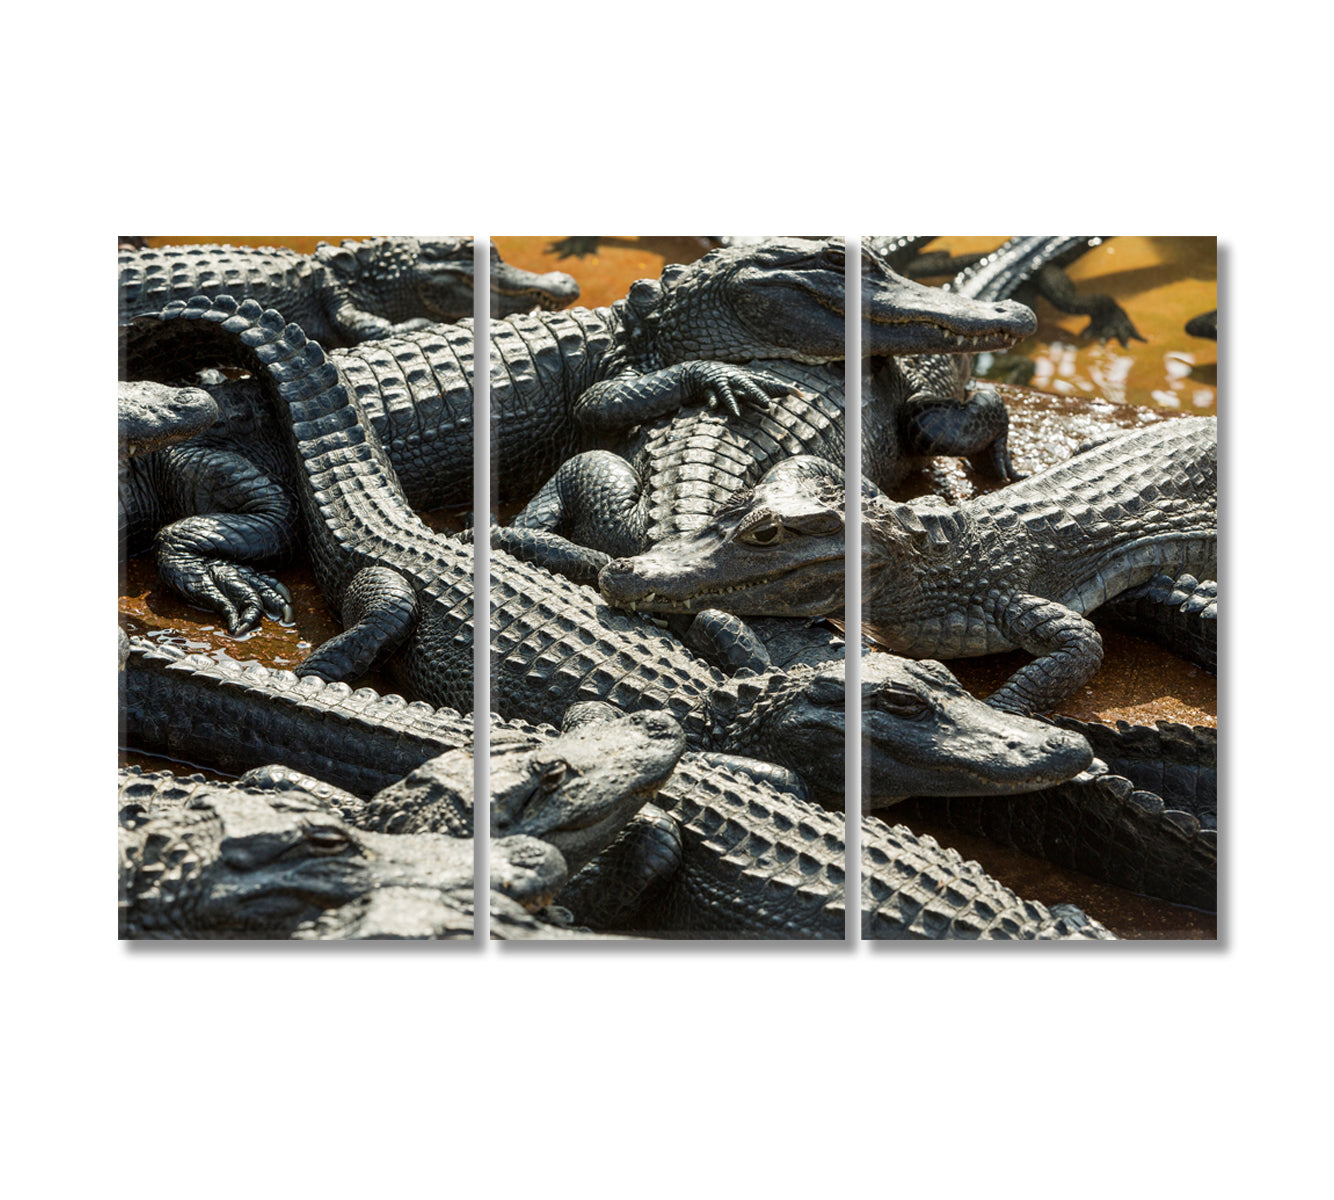 Alligators Canvas Print-Canvas Print-CetArt-3 Panels-36x24 inches-CetArt